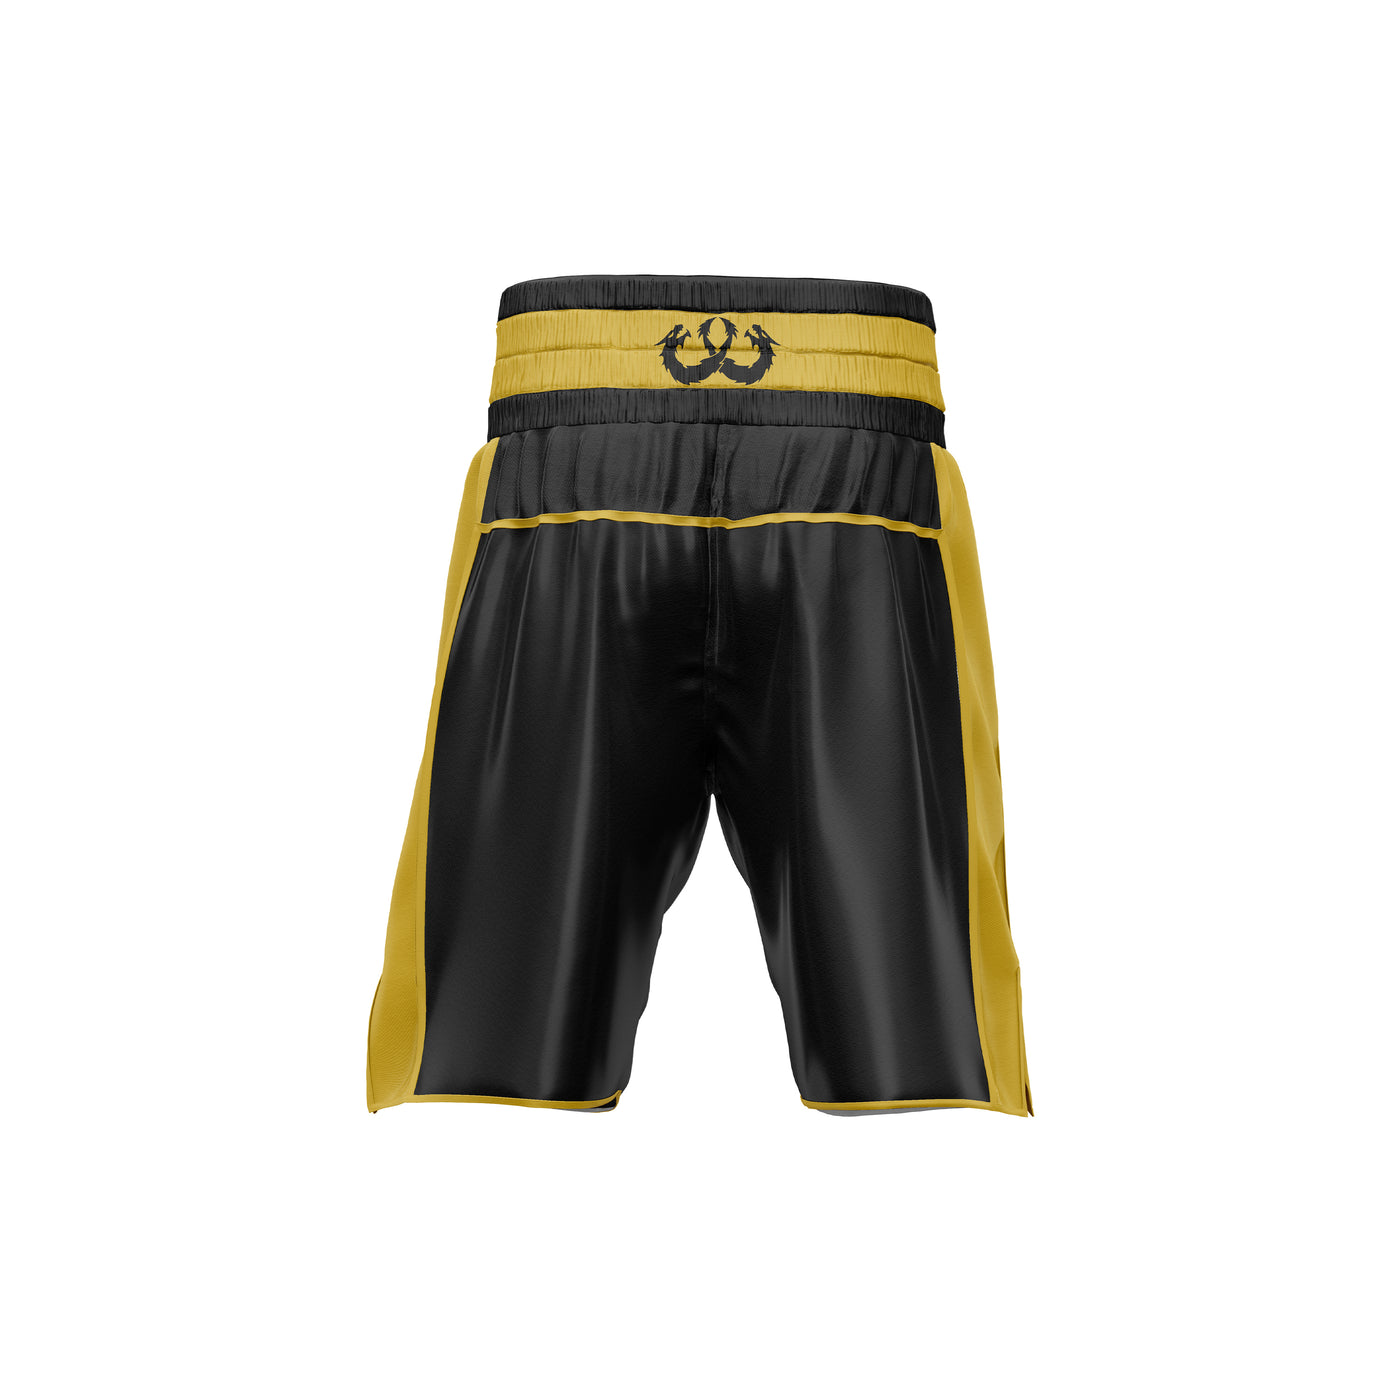 Custom Black/Gold Boxing Shorts